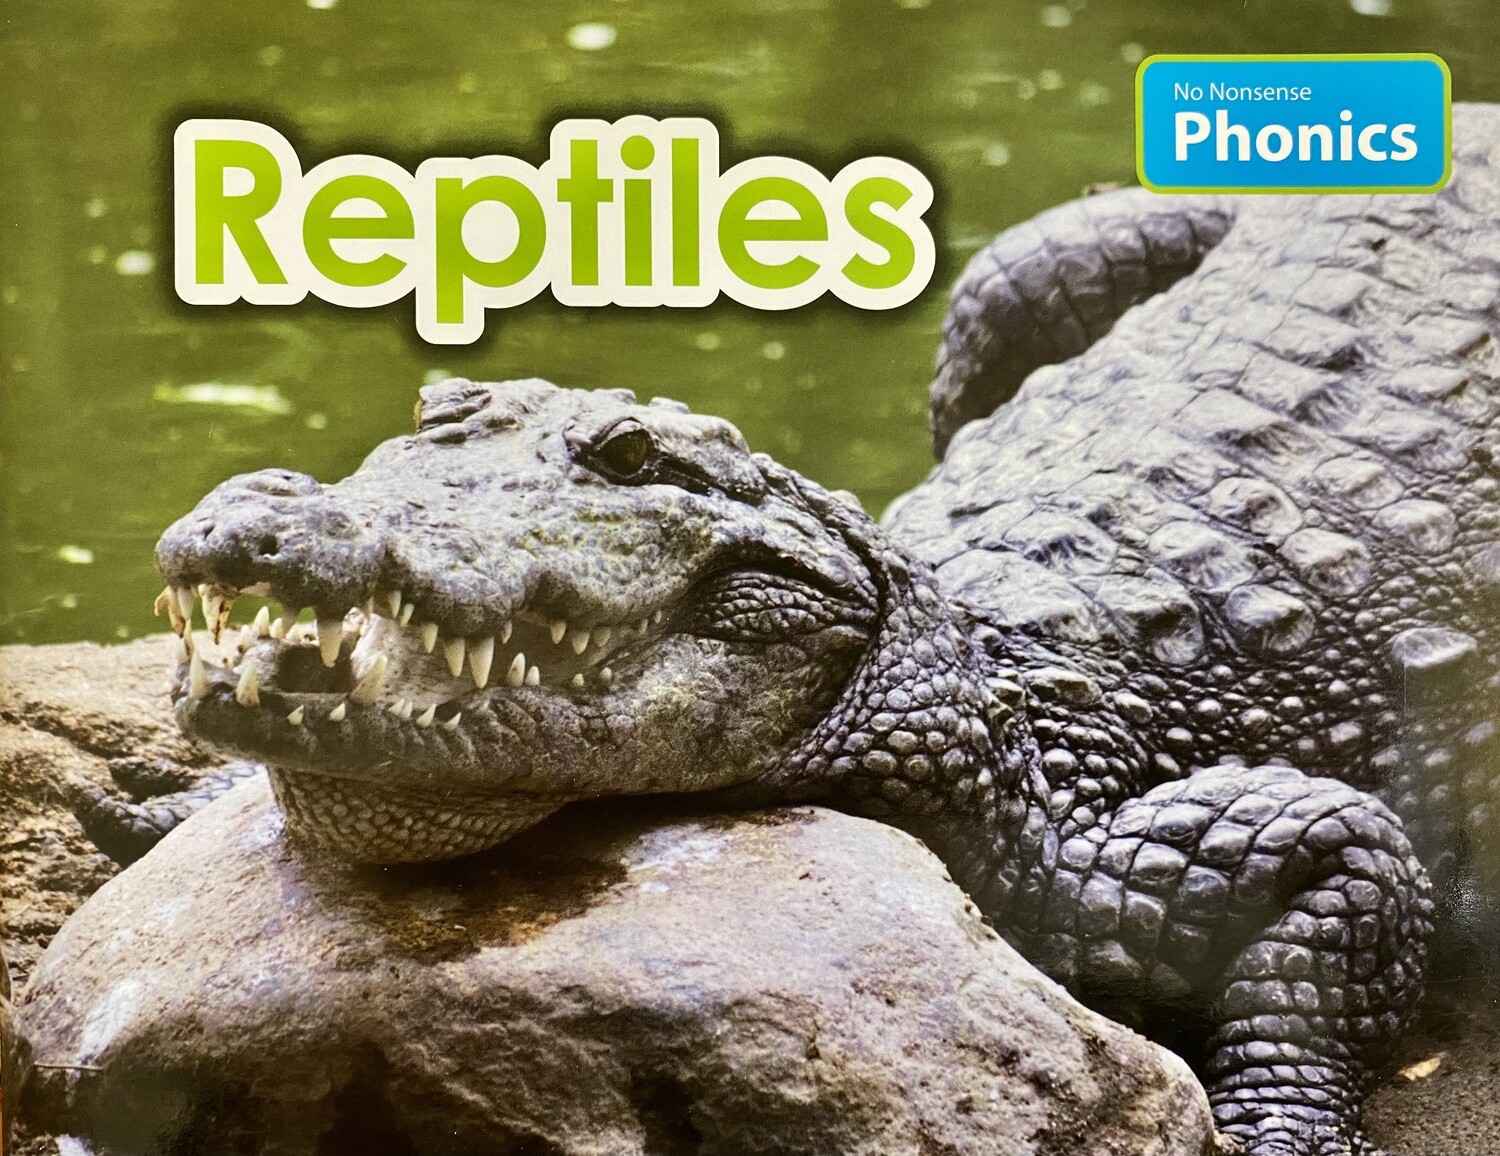 No Nonsense Phonics Level 2 - Reptiles